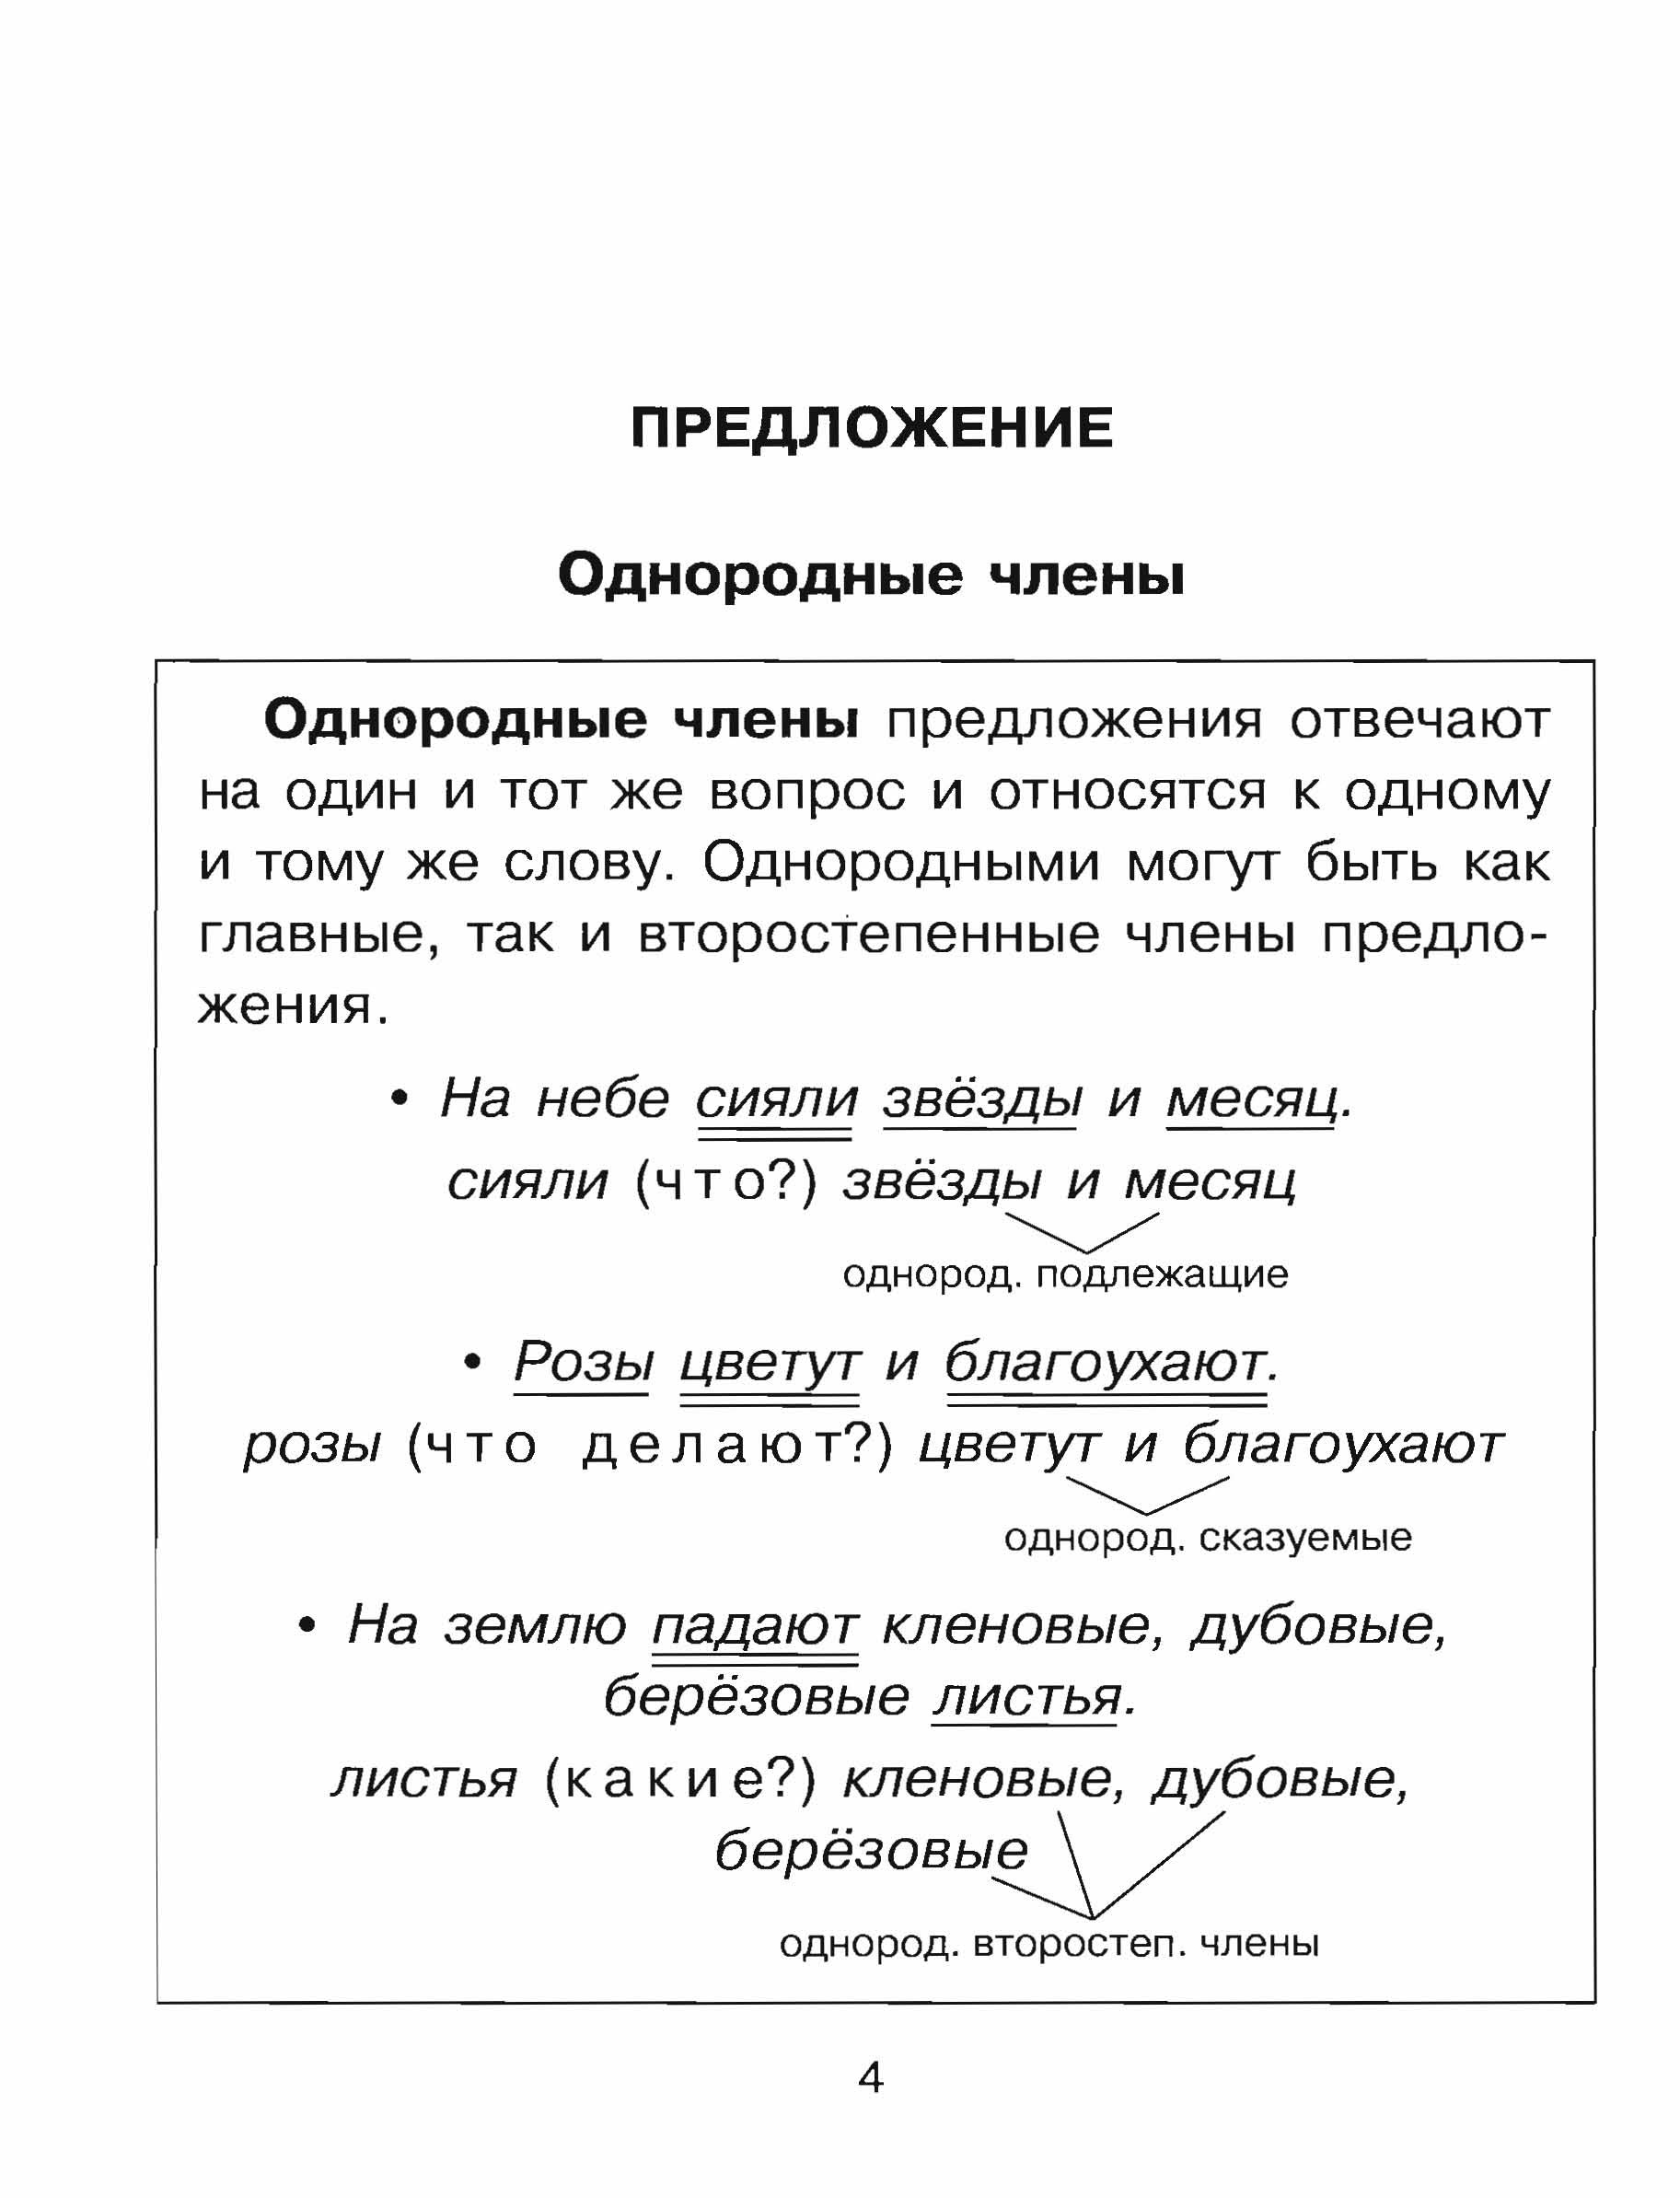 Упражнения на все правила по русскому языку . Автор О. Д. Узорова